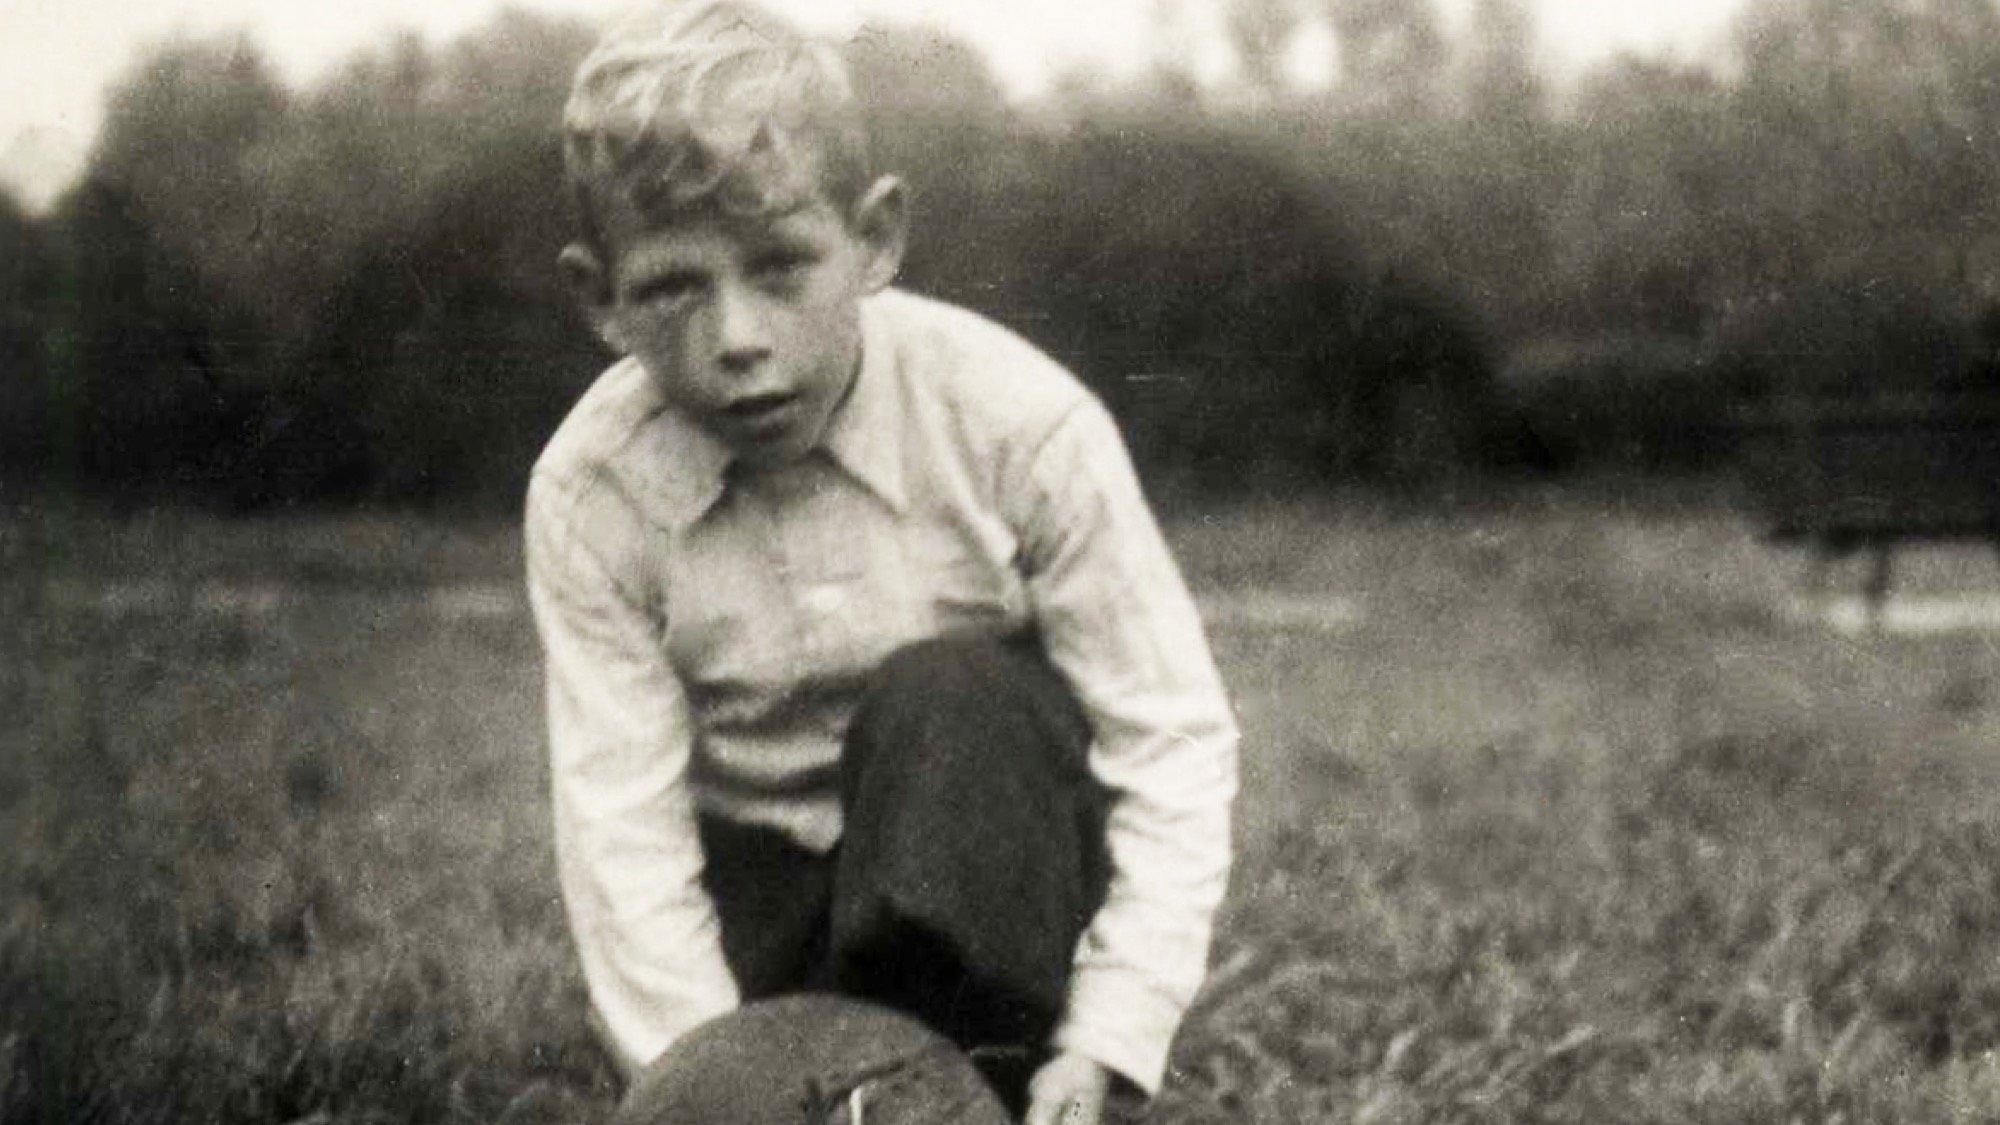 Kinderfoto von Paul Crutzen. Er kniet auf der Wiese. Vor ihm liegt ein Fußball.